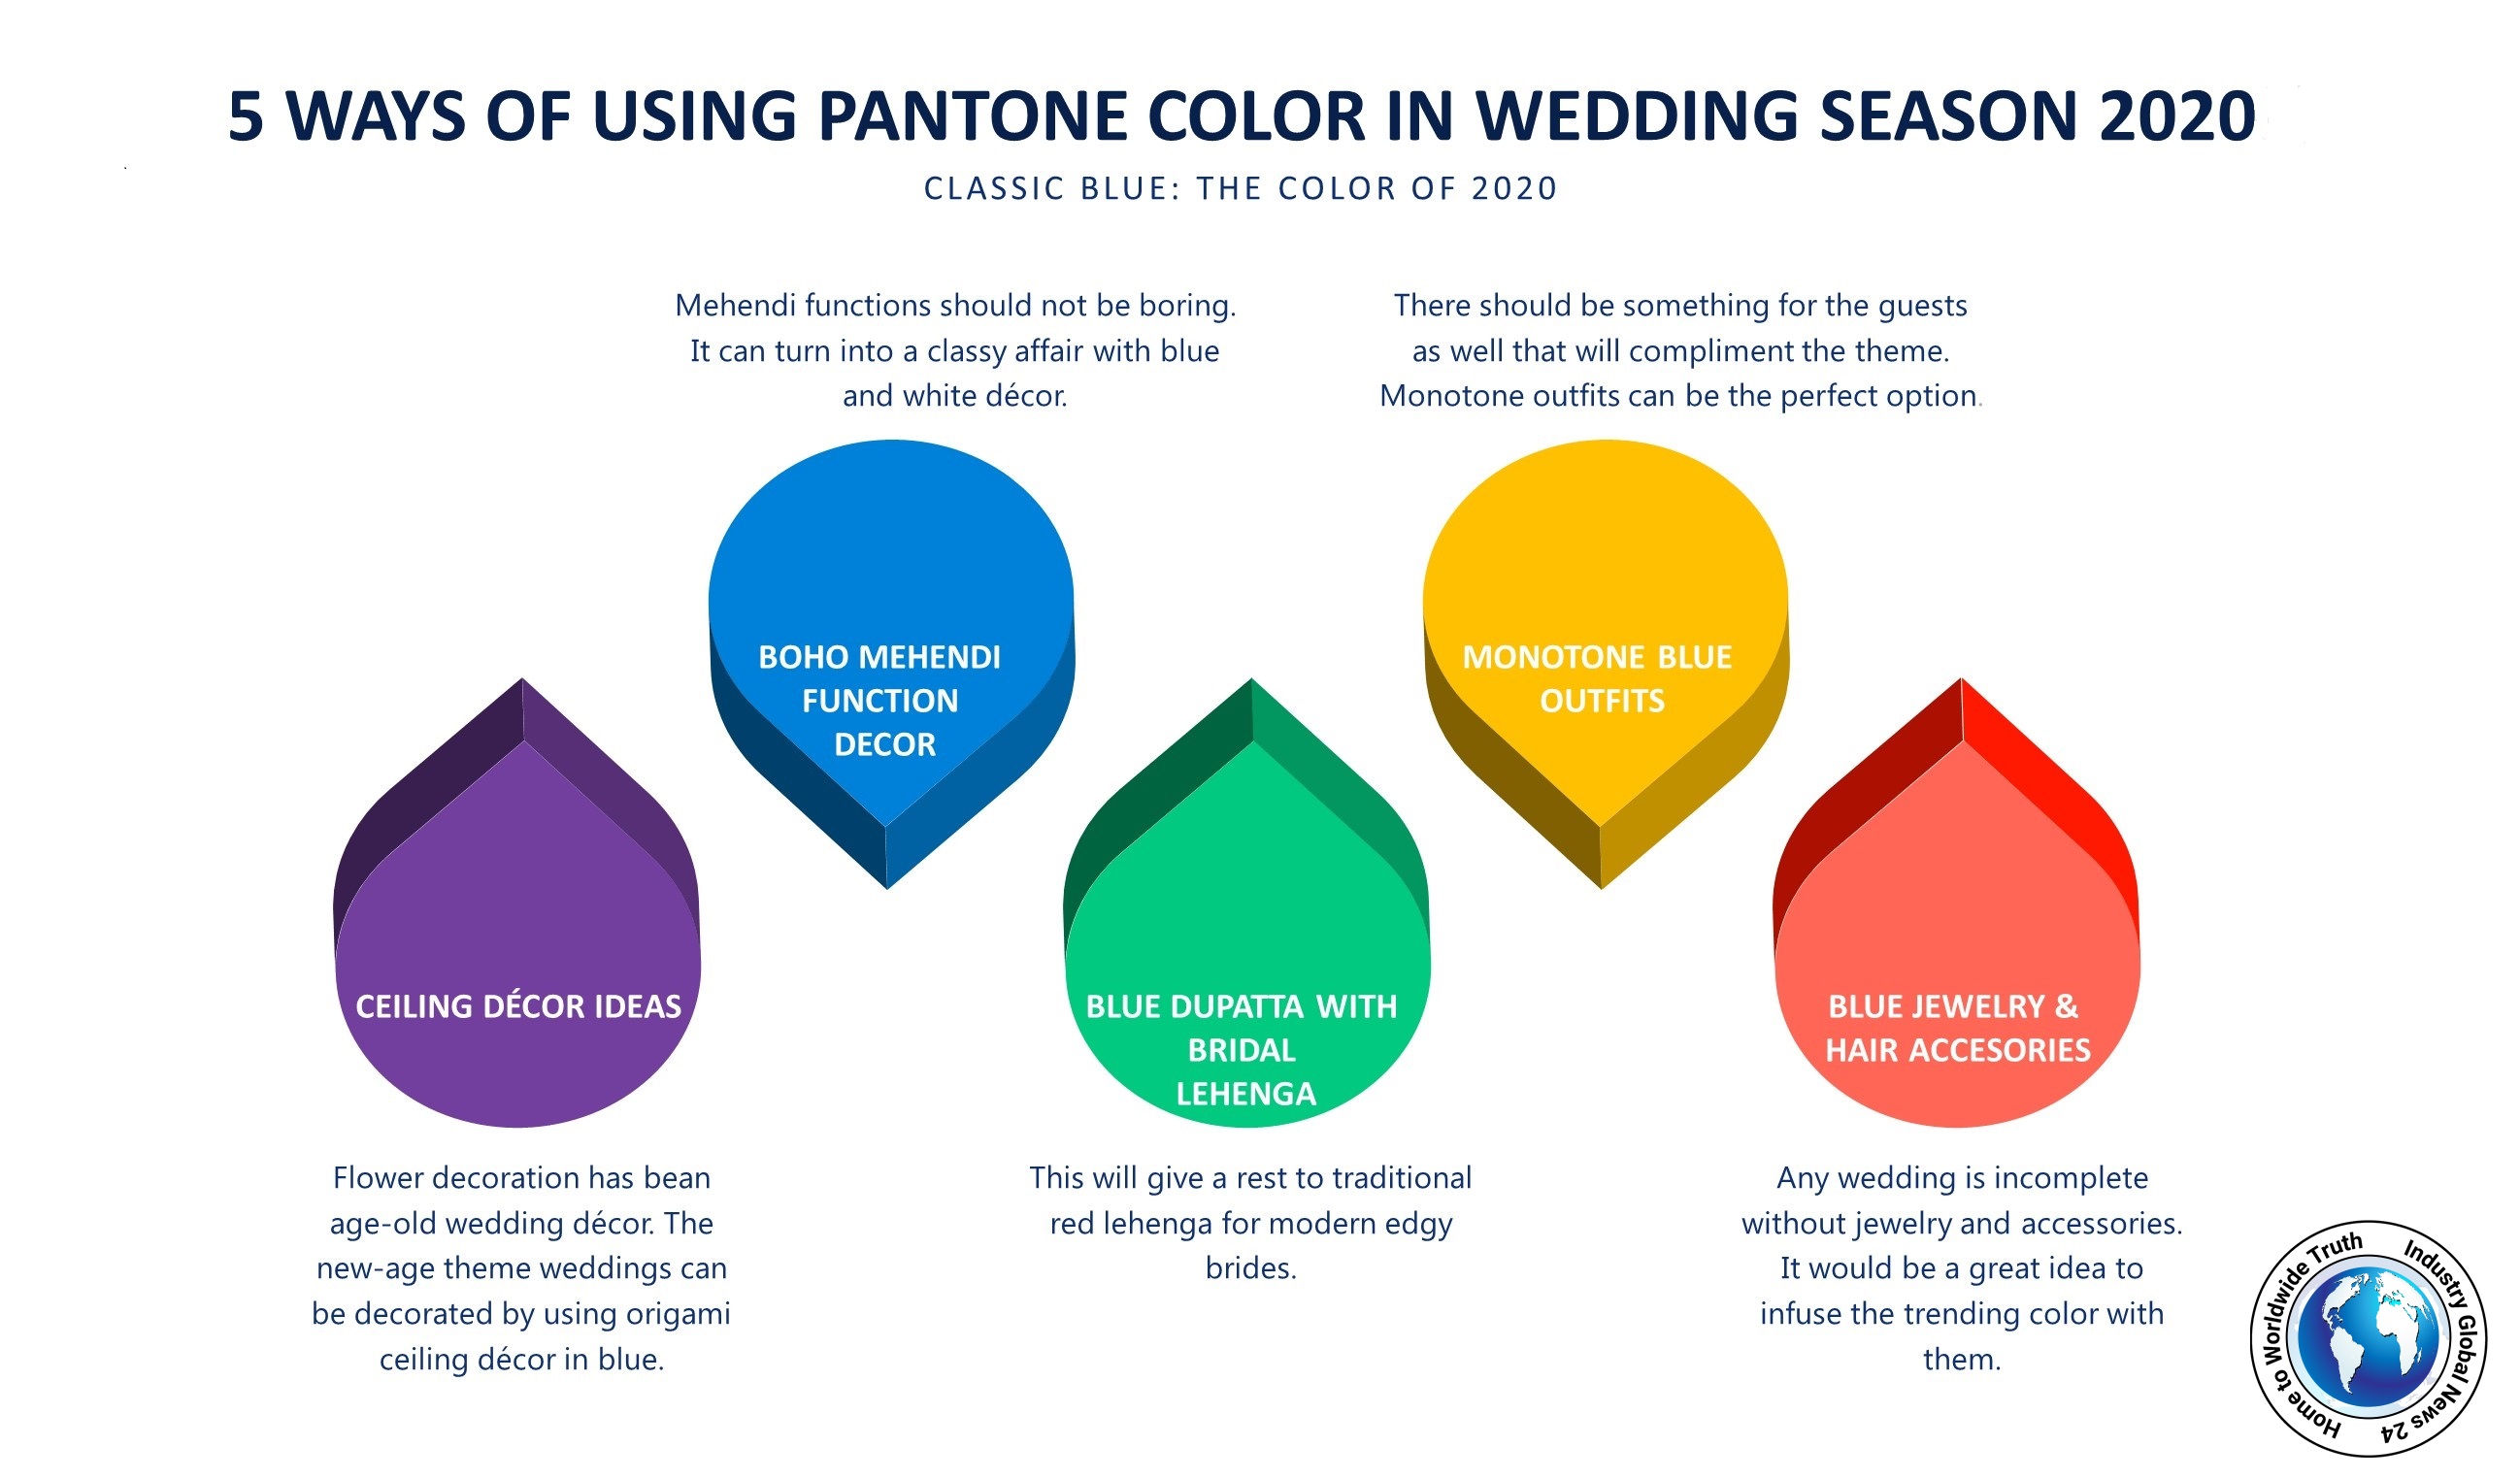 5 WAY OF USING PANTONE COLOR IN WEDDING SEASON 2020